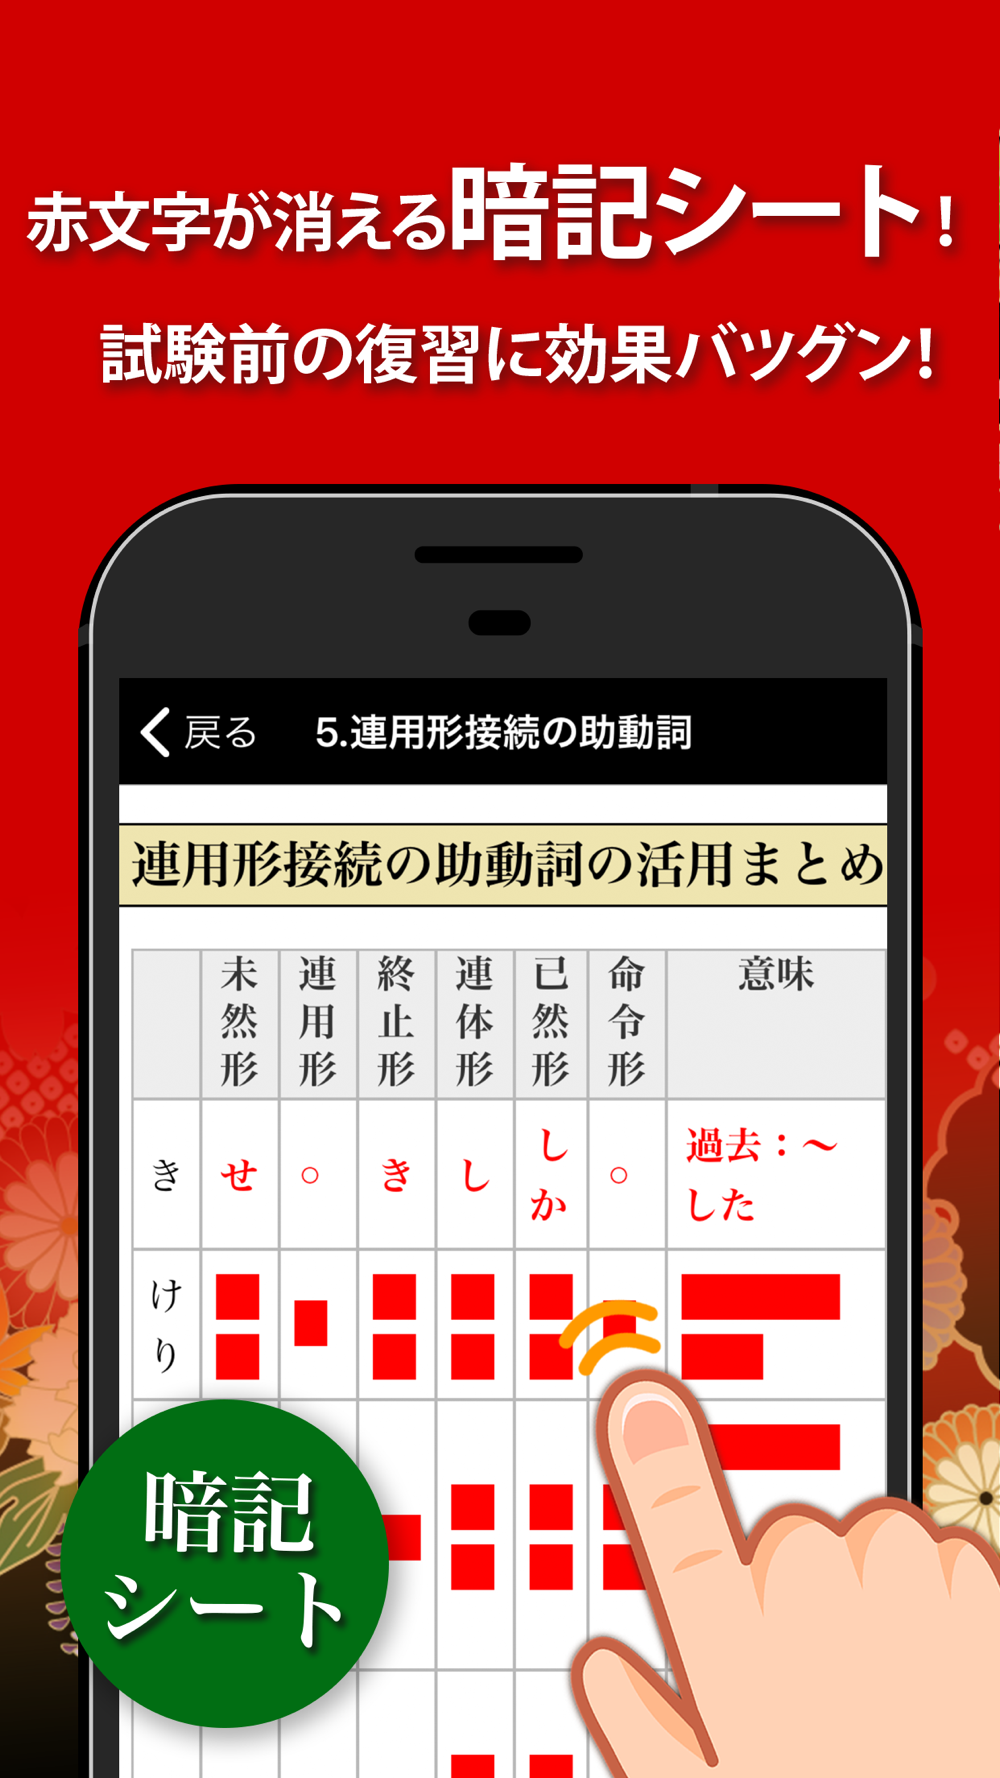 古文 漢文 古文単語 古典文法 漢文 Free Download App For Iphone Steprimo Com